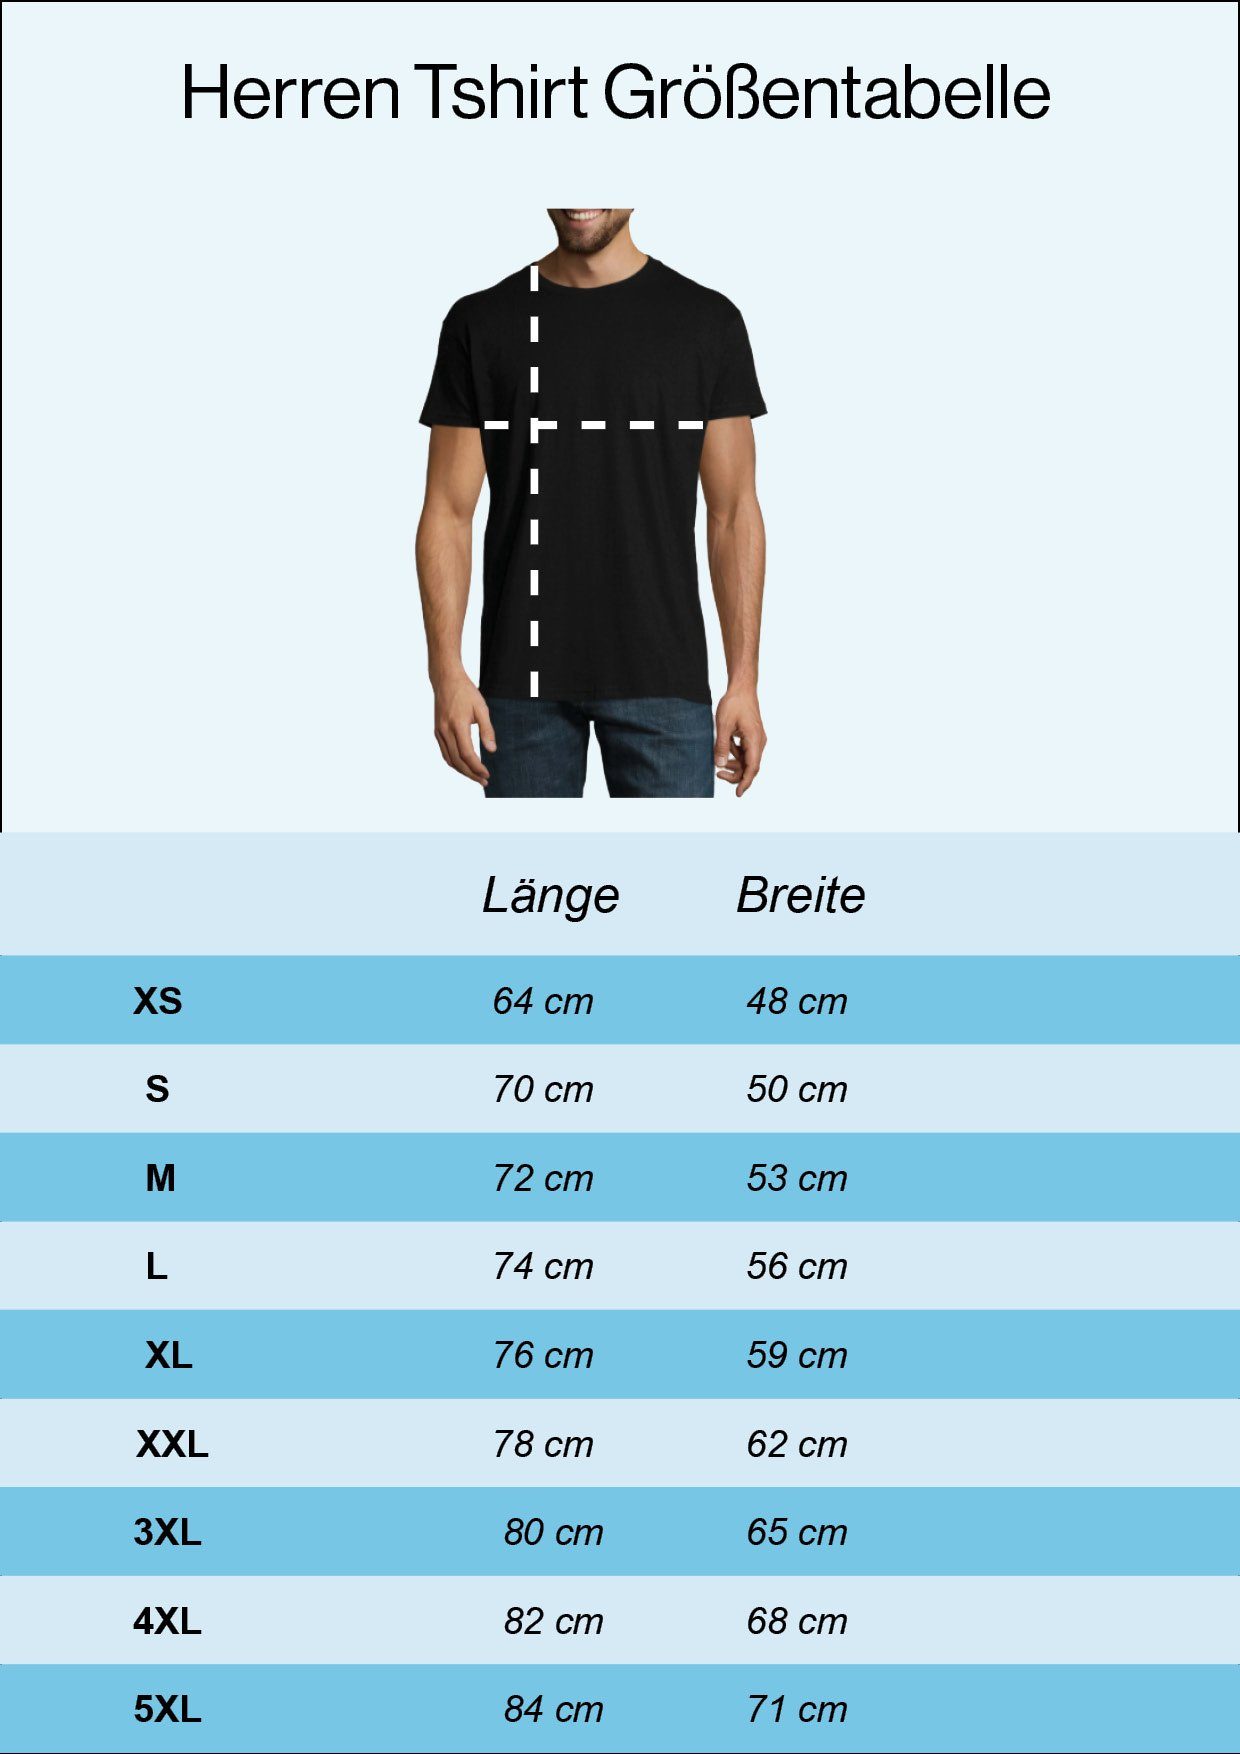 Herren Shirts Youth Designz T-Shirt Engineer Herren Shirt mit trendigem Ingenieur Frontdruck